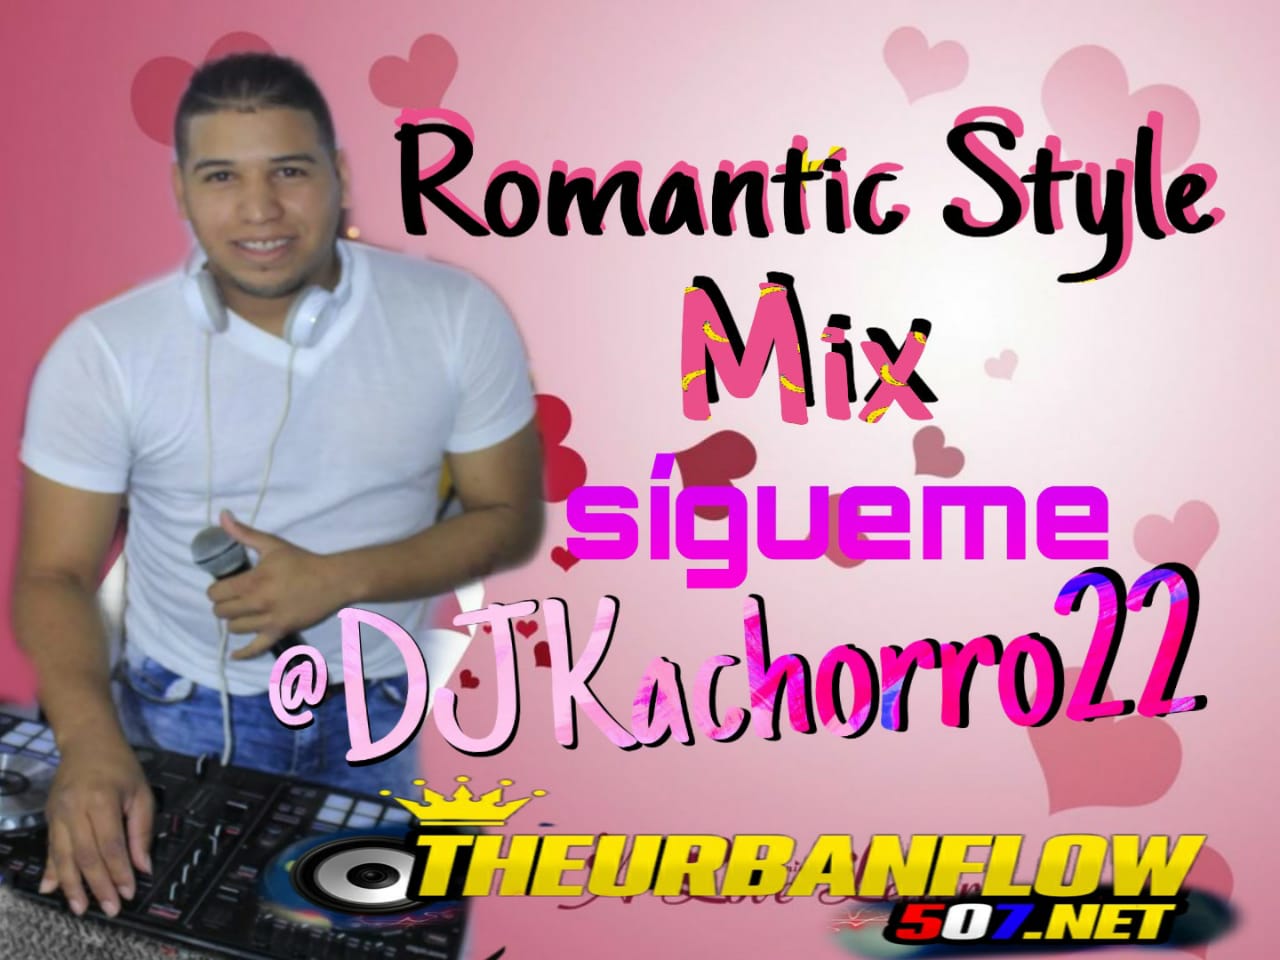  RomanticStyle - @DJkachorro22